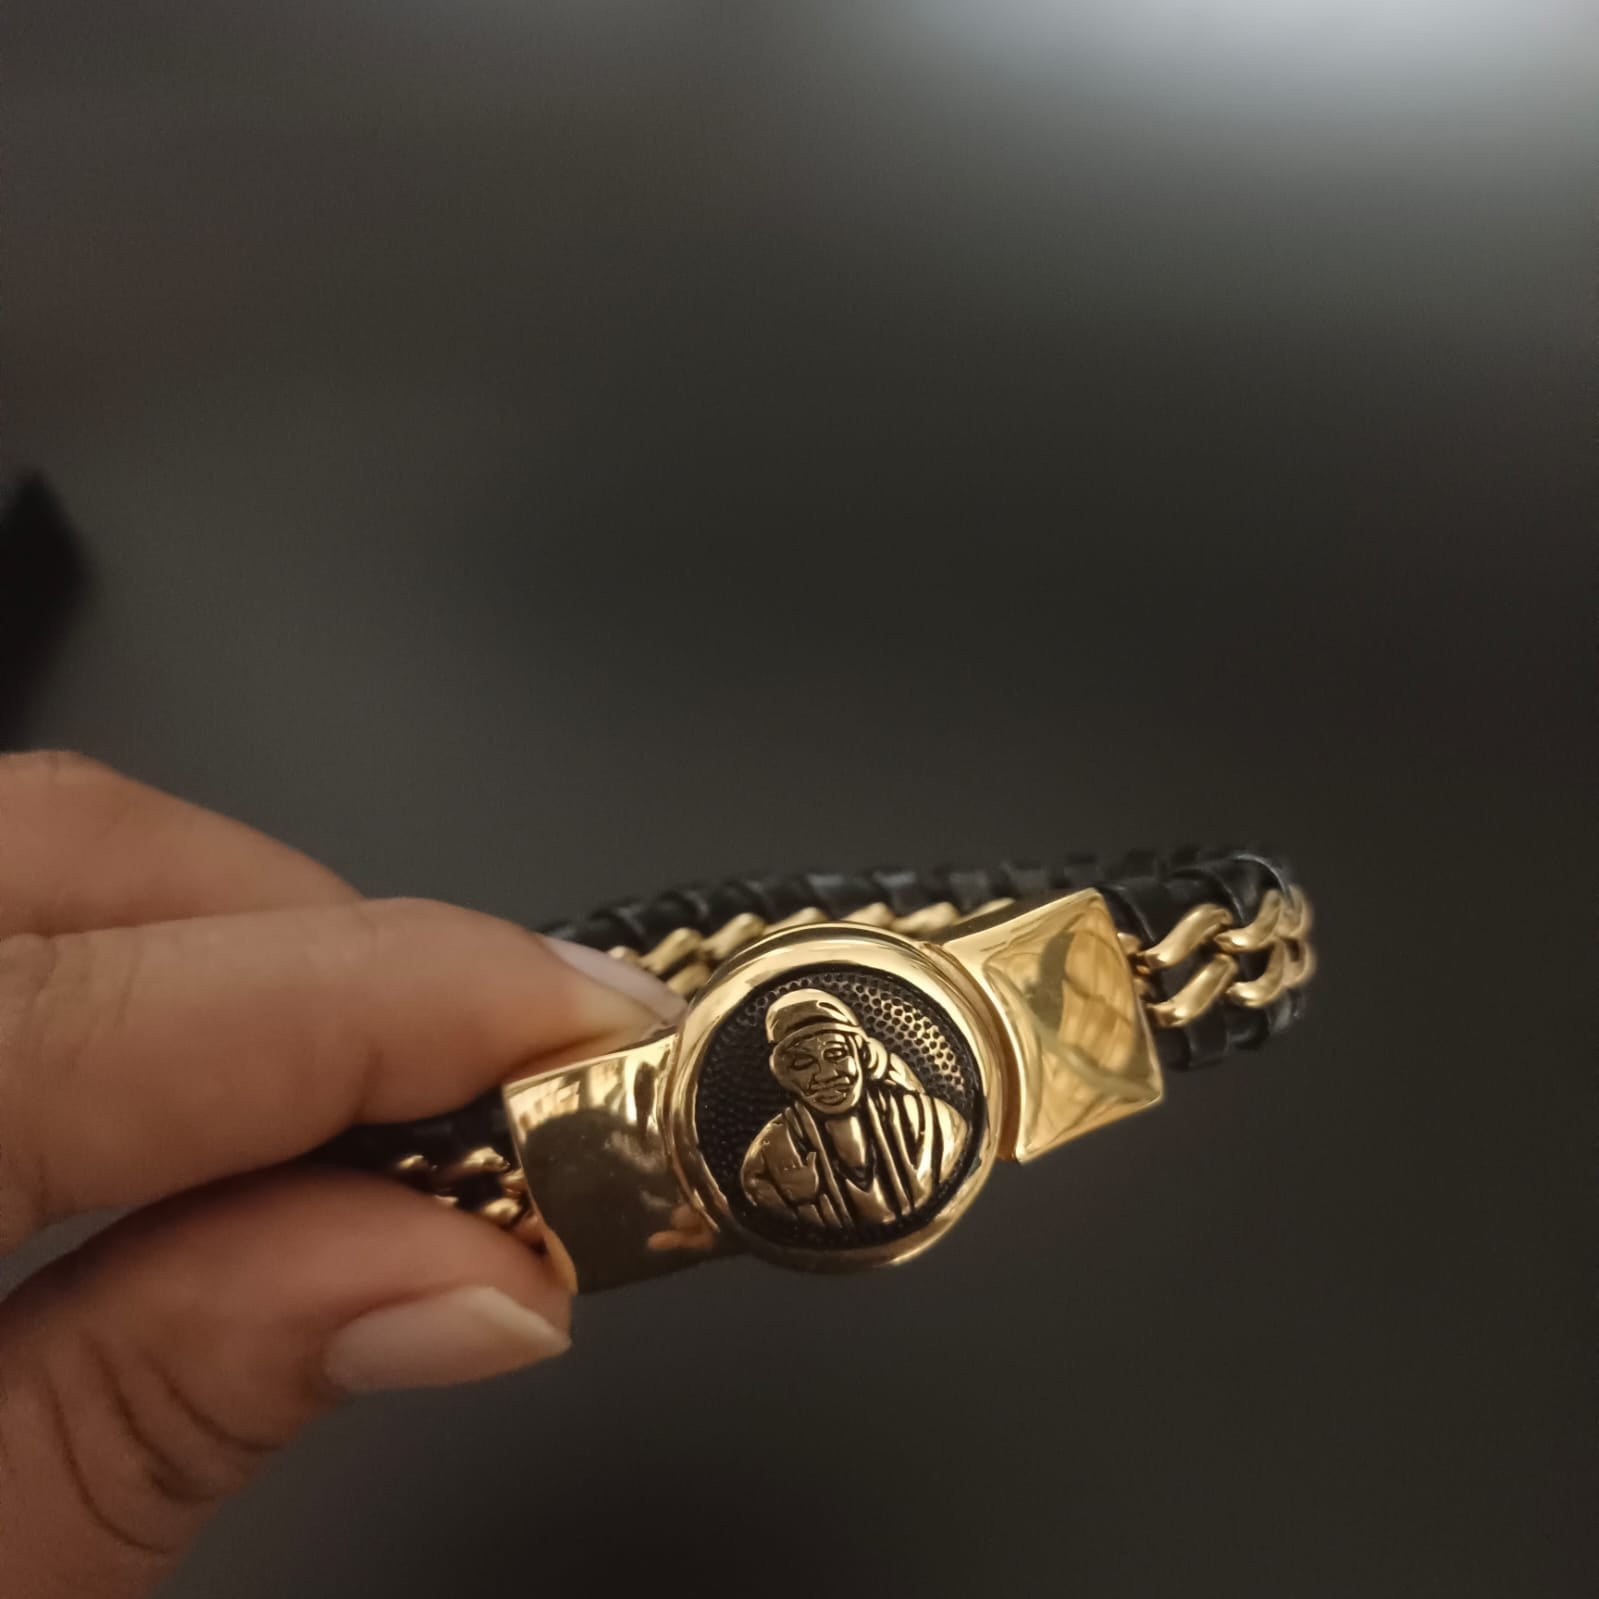 Jack Marc New Sai Baba Devotional Gold Bracelet For Men-Jack Marc - JACKMARC.COM